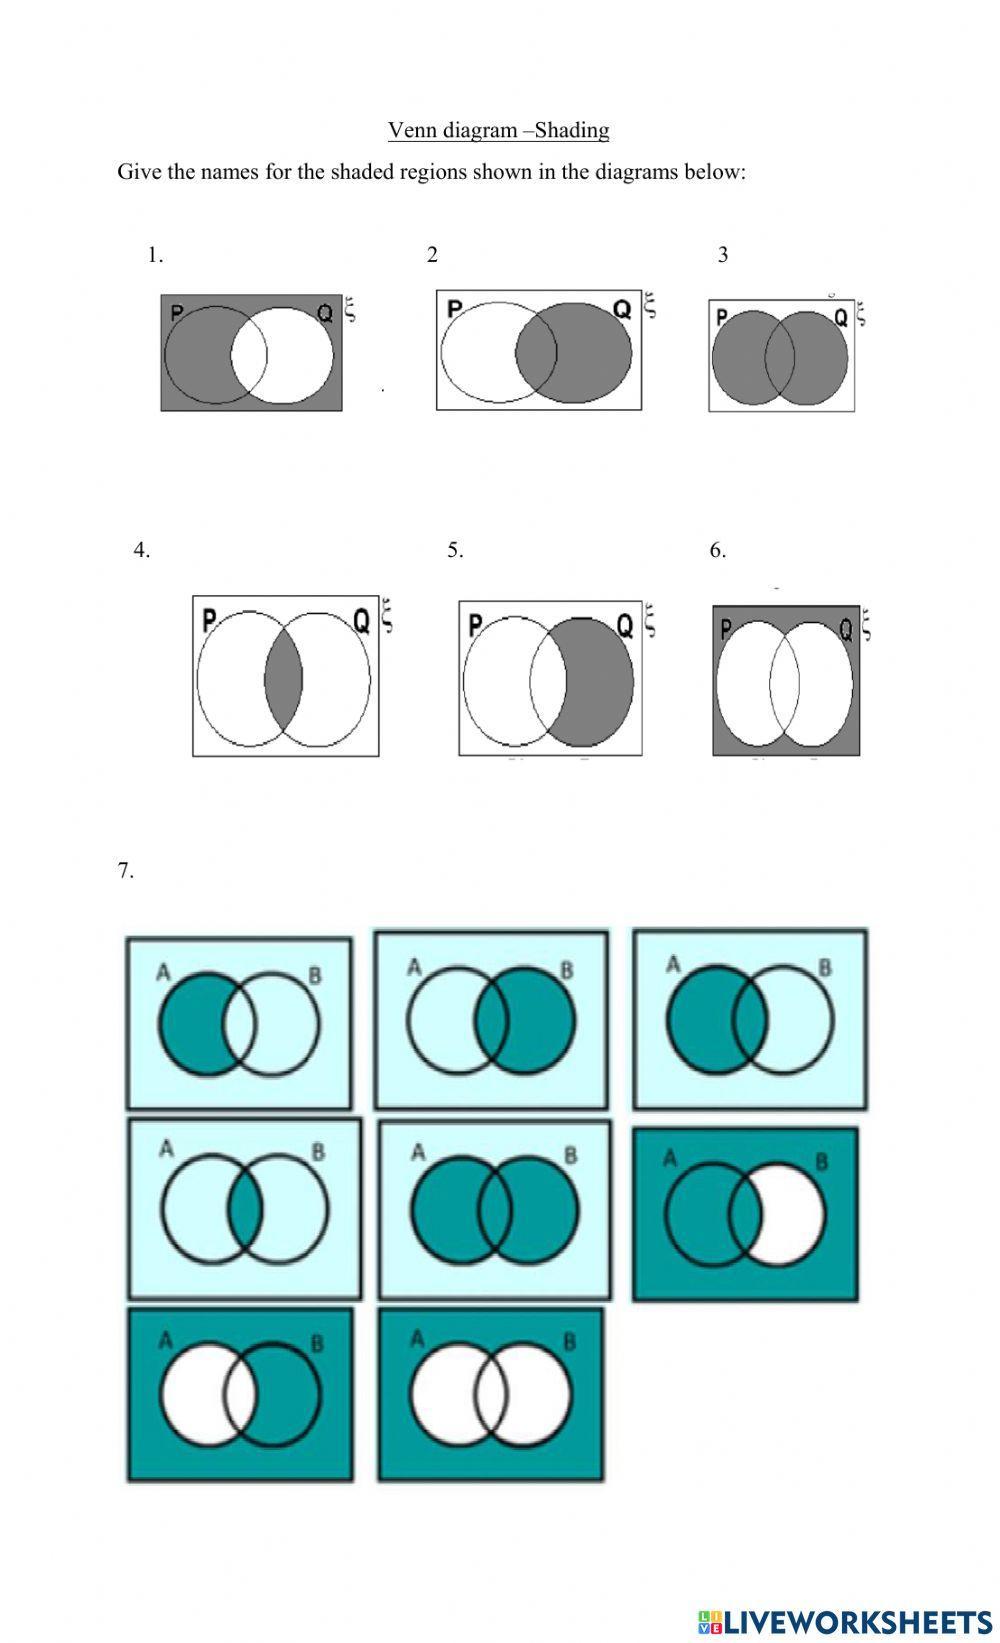 Venn diagram -shading